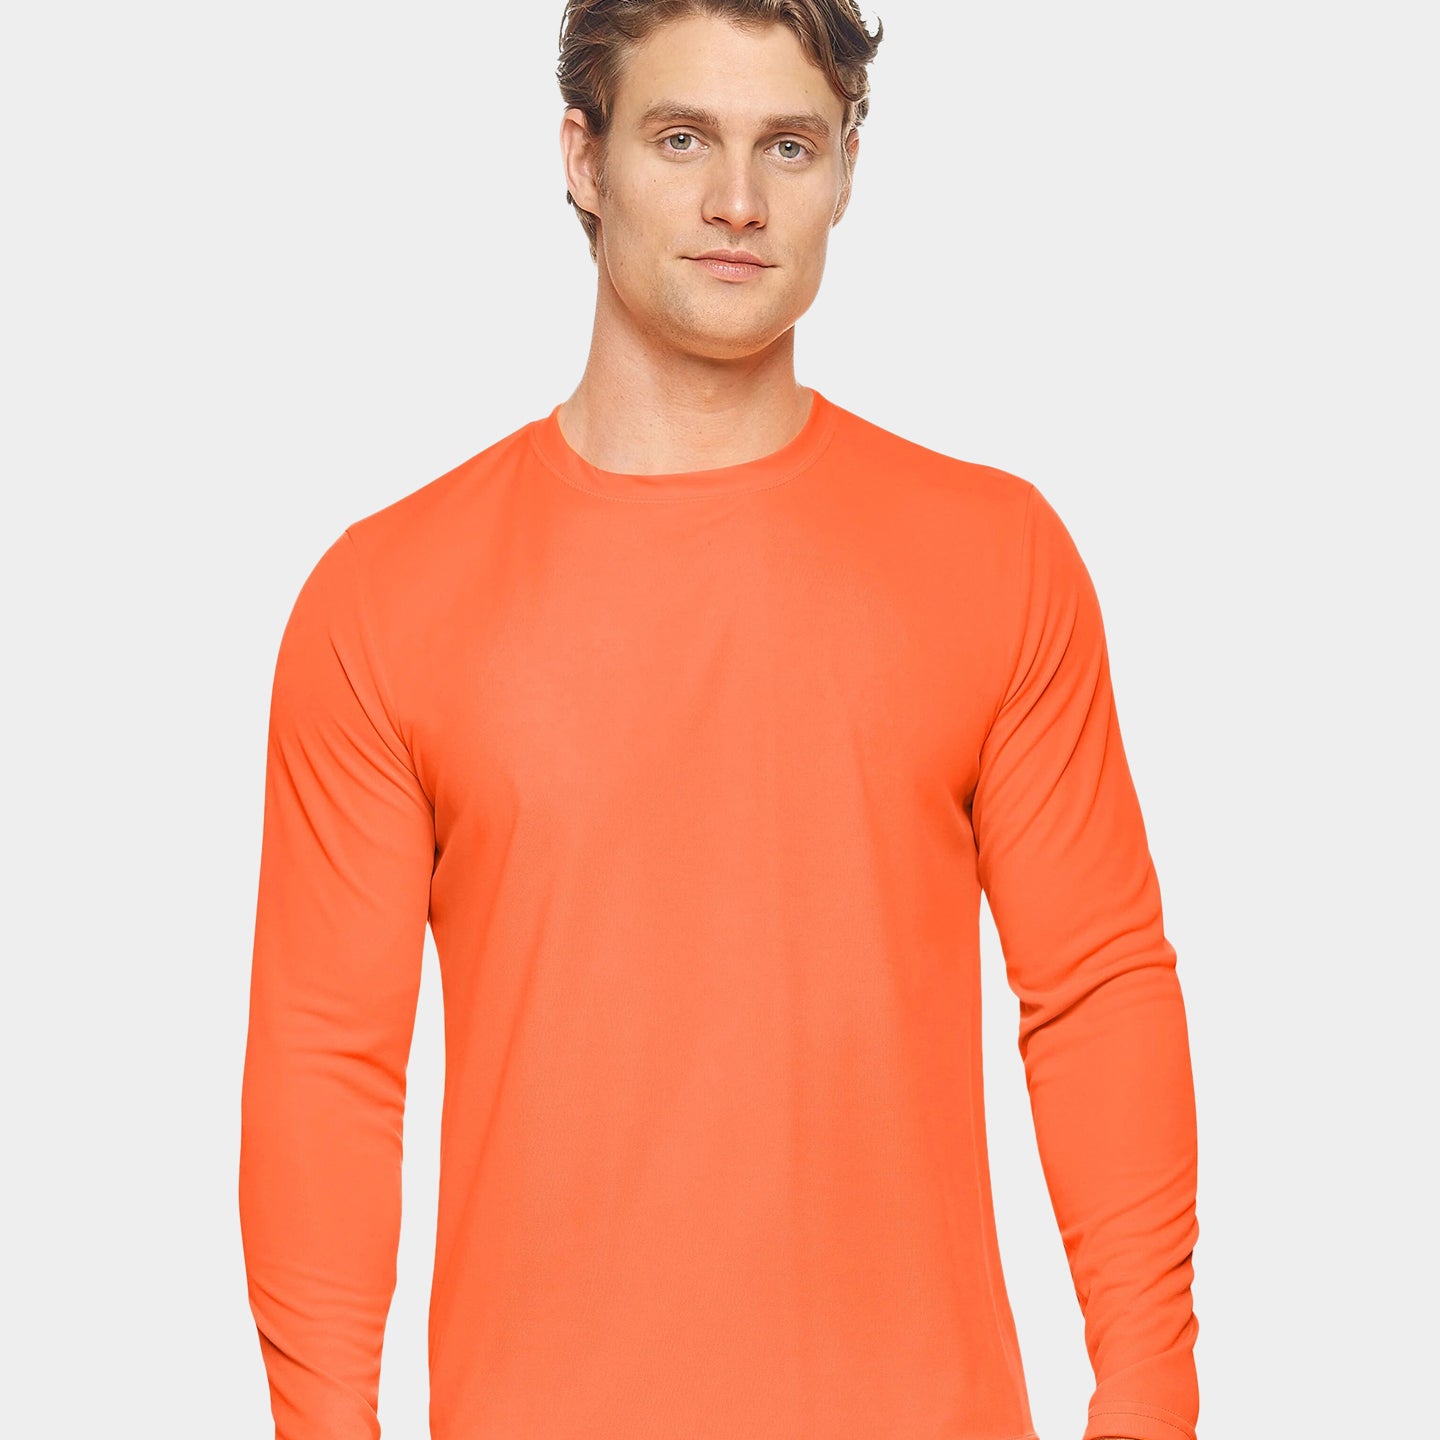 Expert Brand DriMax Men's Performance Long Sleeve Shirt, XL, Orange A1